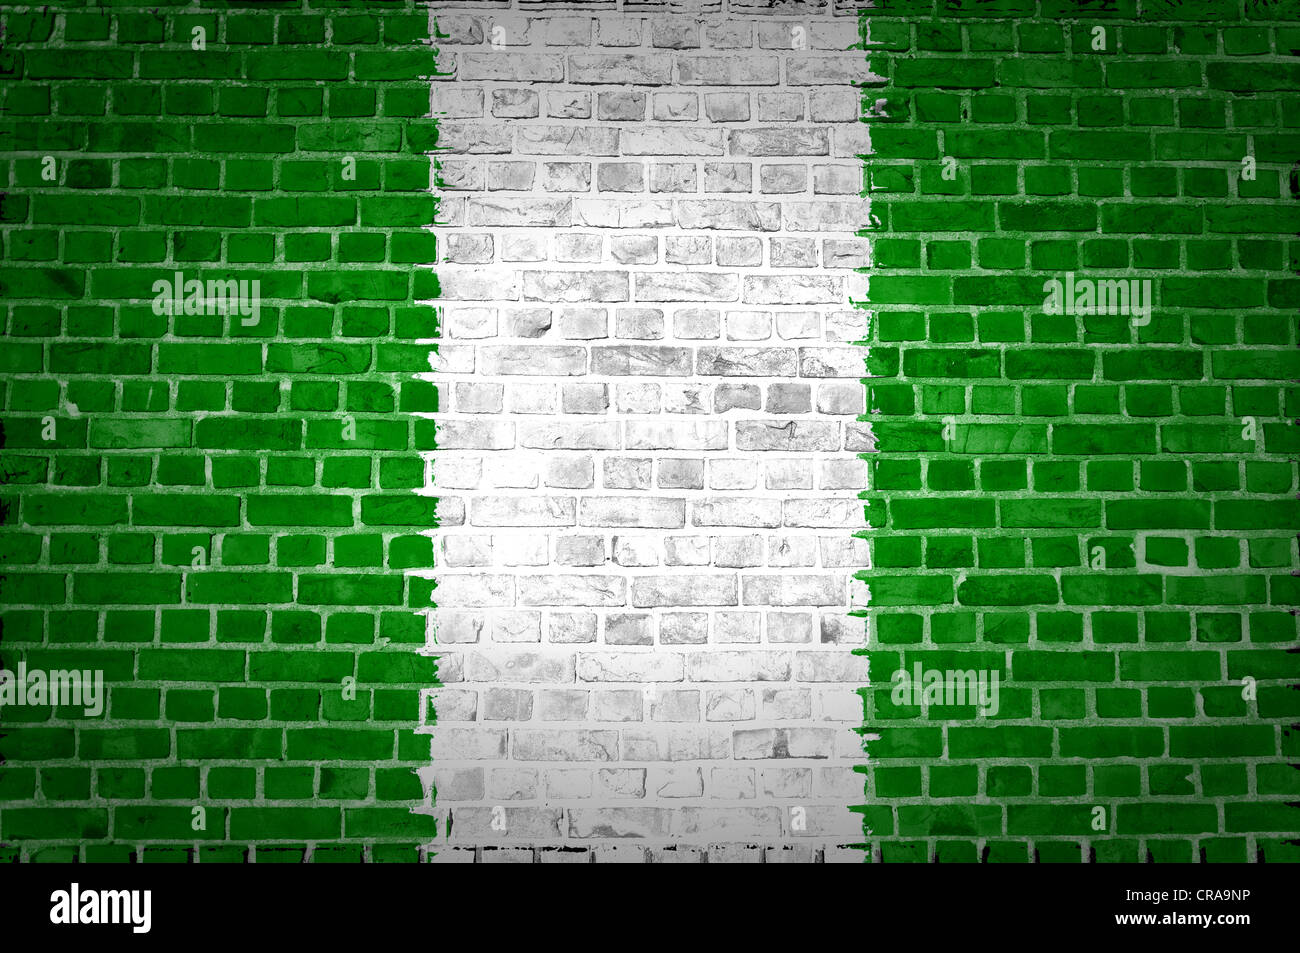 Una immagine della Nigeria bandiera dipinta su un muro di mattoni in una collocazione urbana Foto Stock